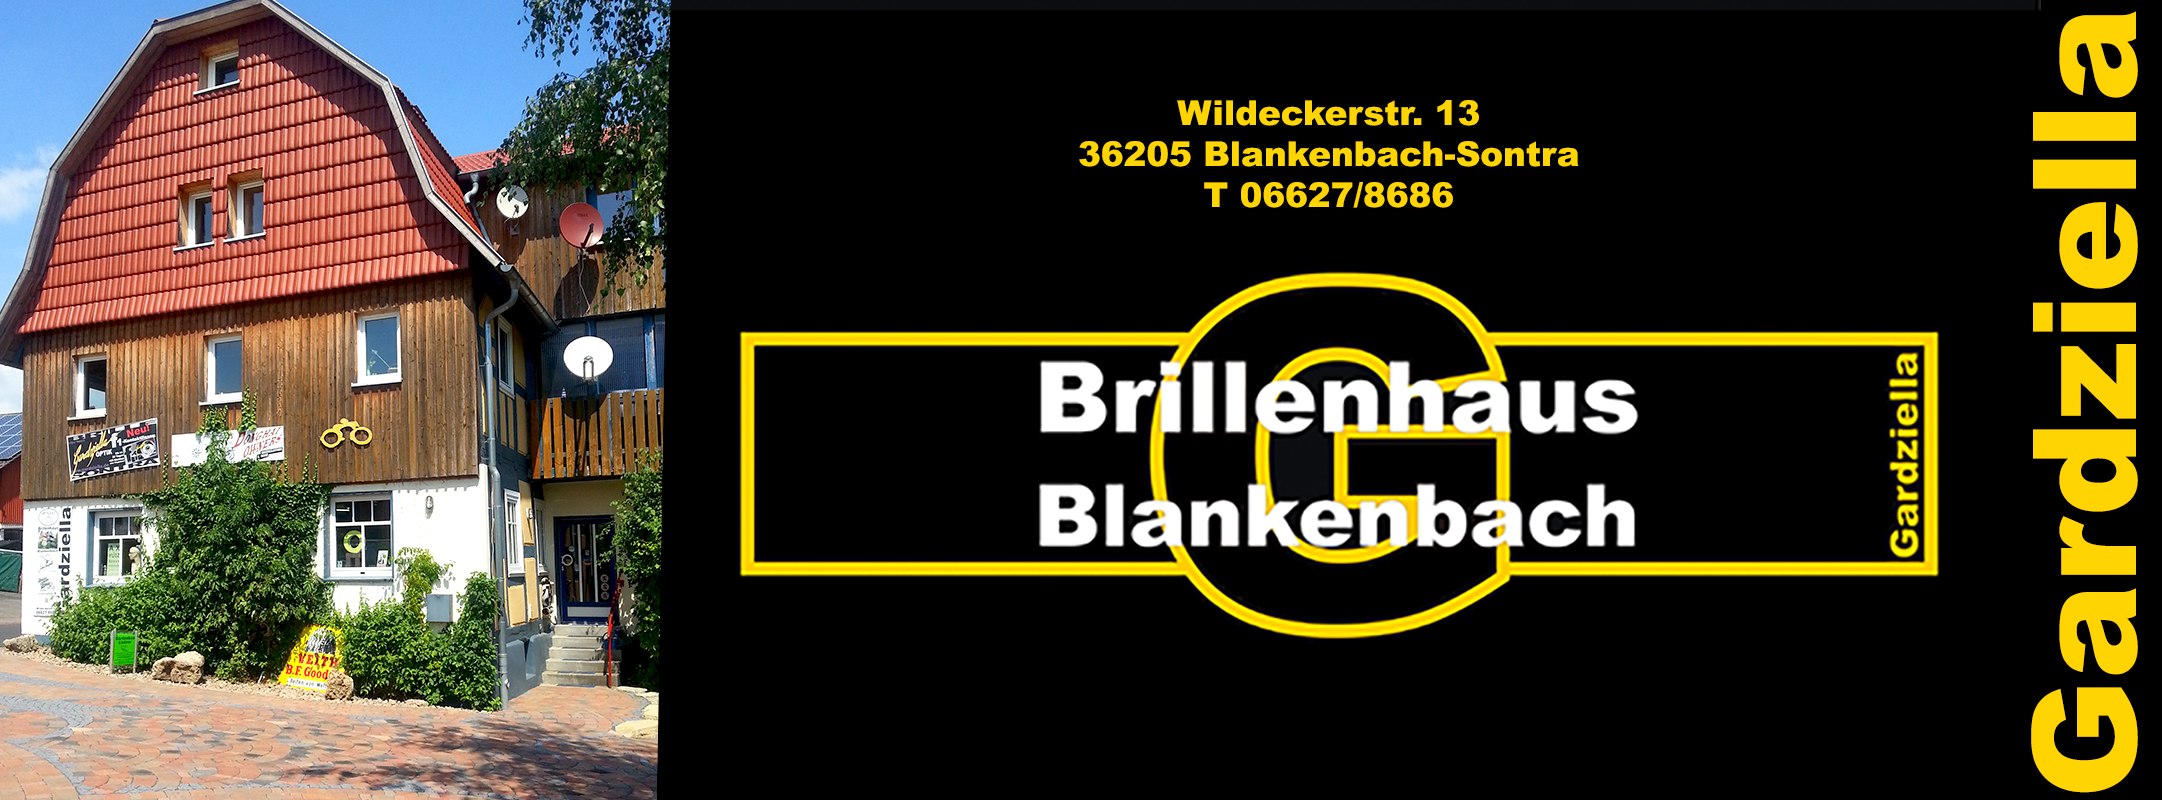 Über uns | Brillenhaus Blankenbach